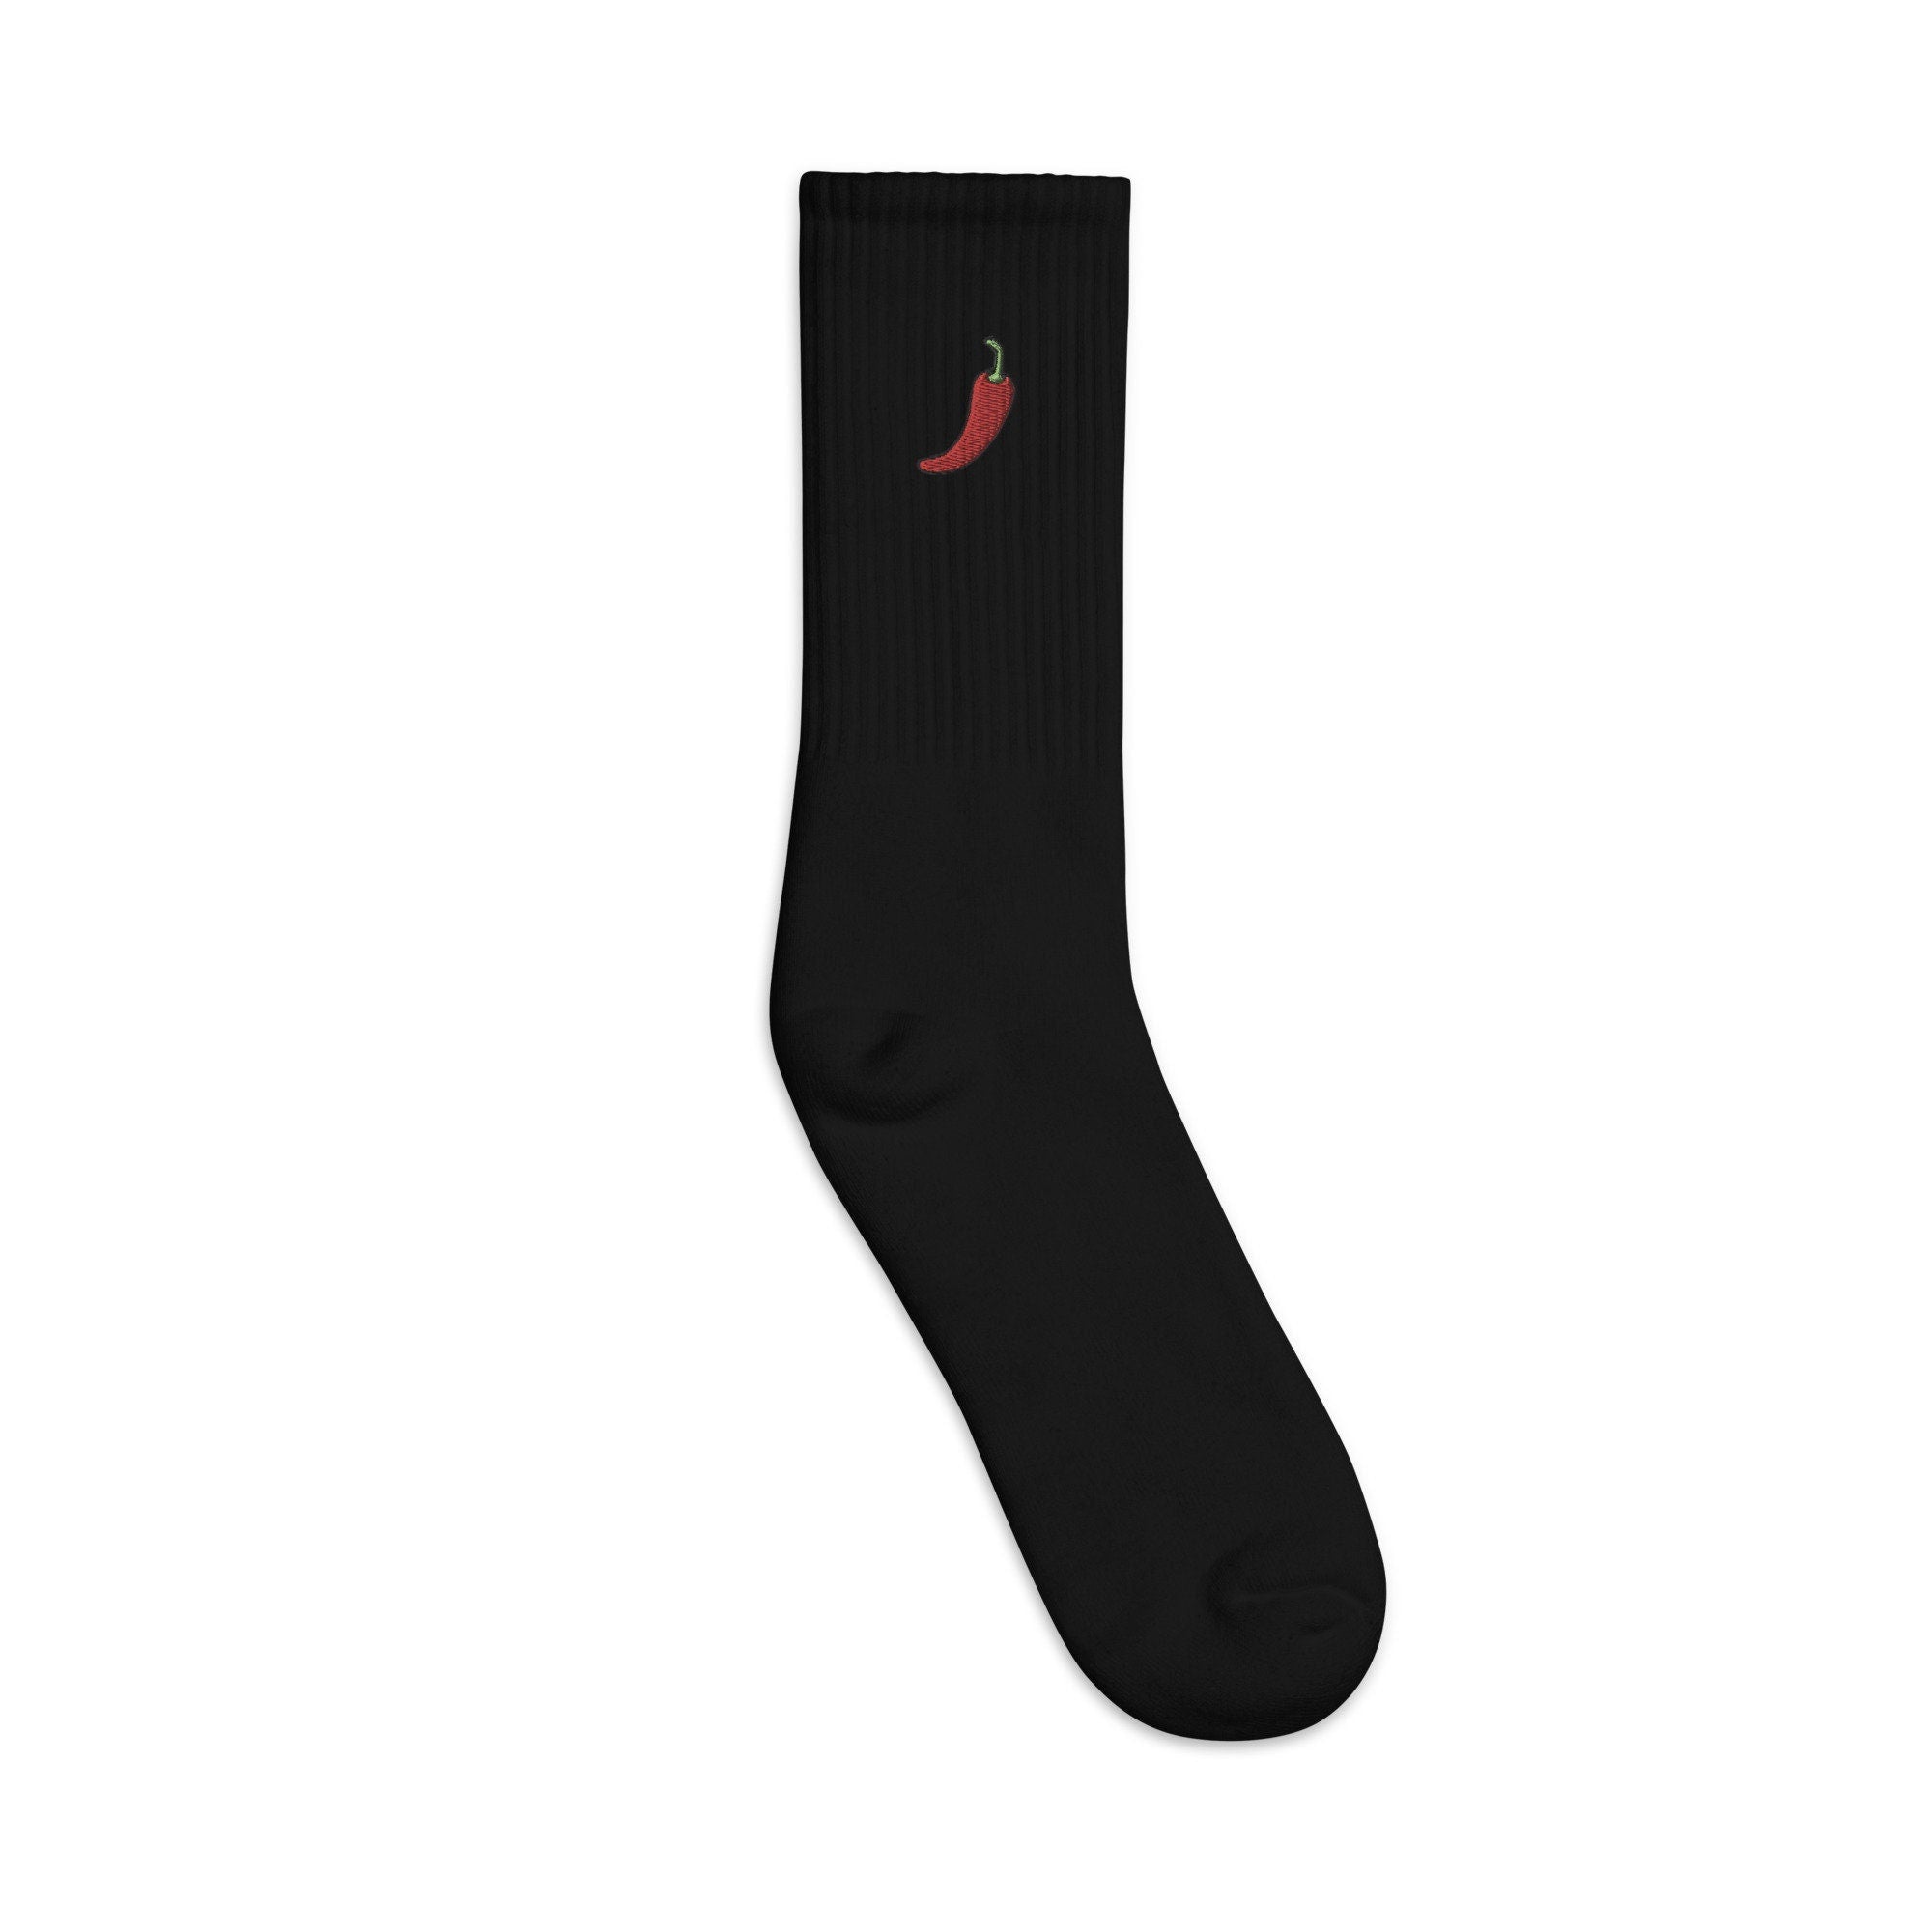 Pepper Embroidered Socks, Premium Embroidered Socks, Long Socks Gift - Multiple Colors